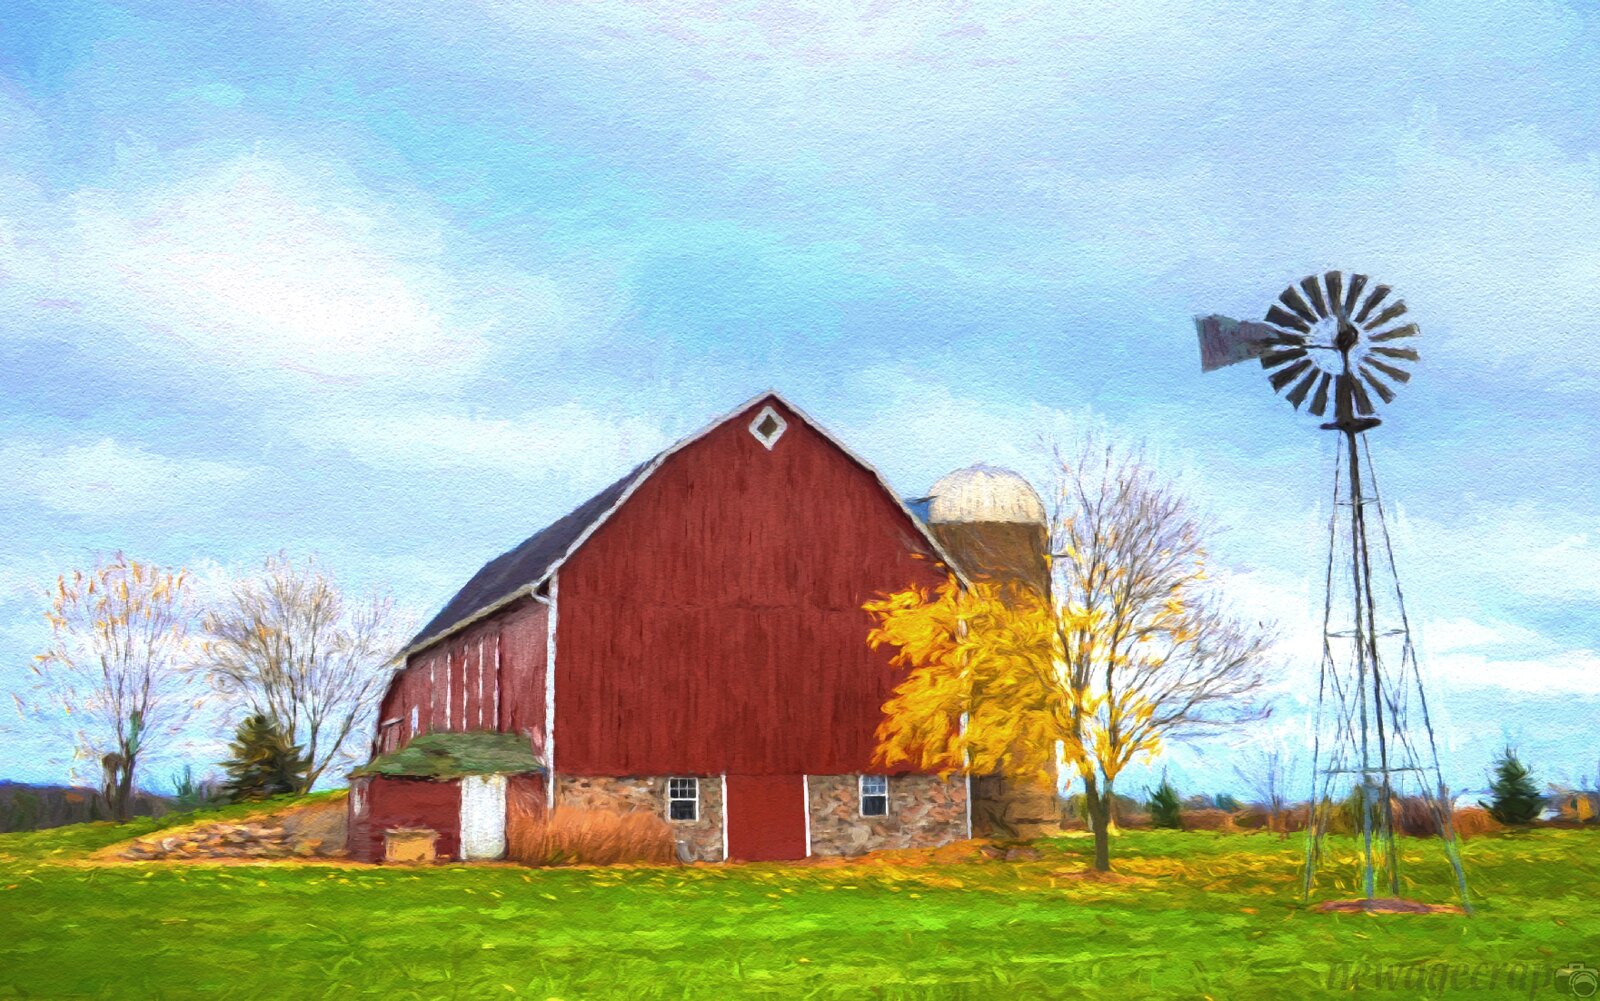 A well-kept barn